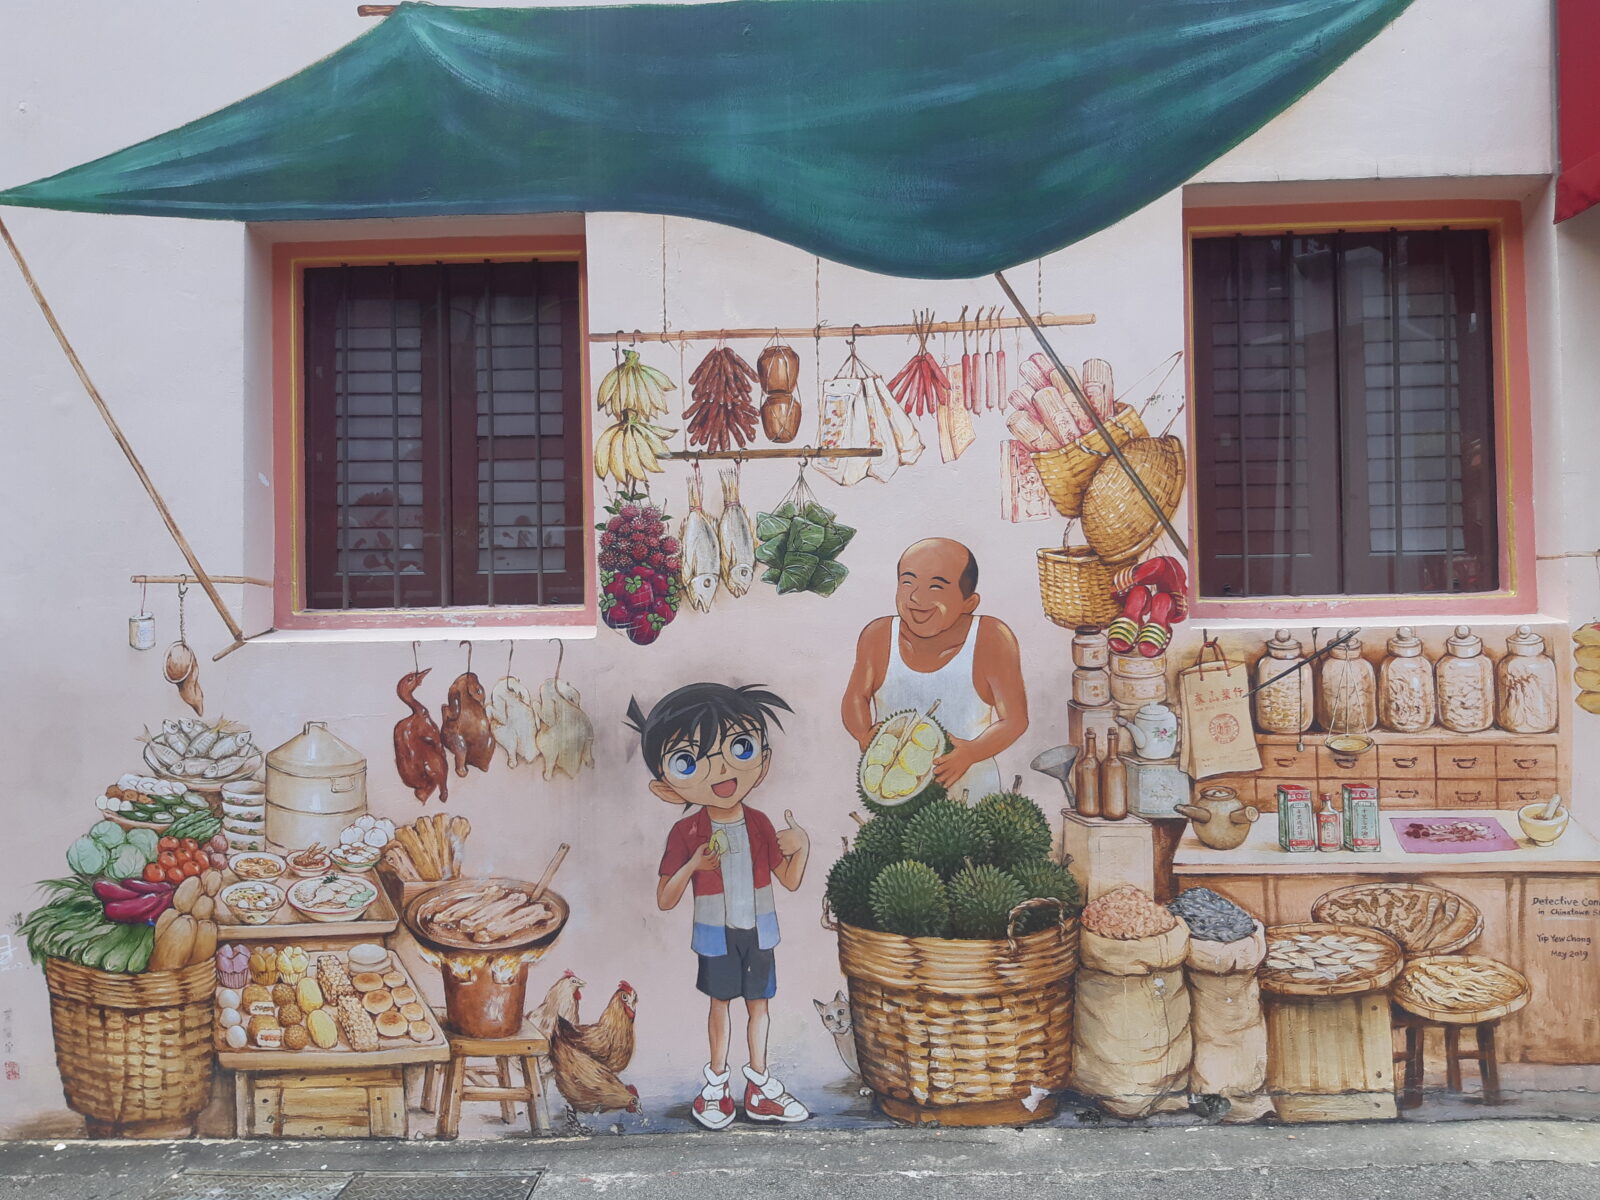 Yip Yew Chong murals Chinatown Singapore